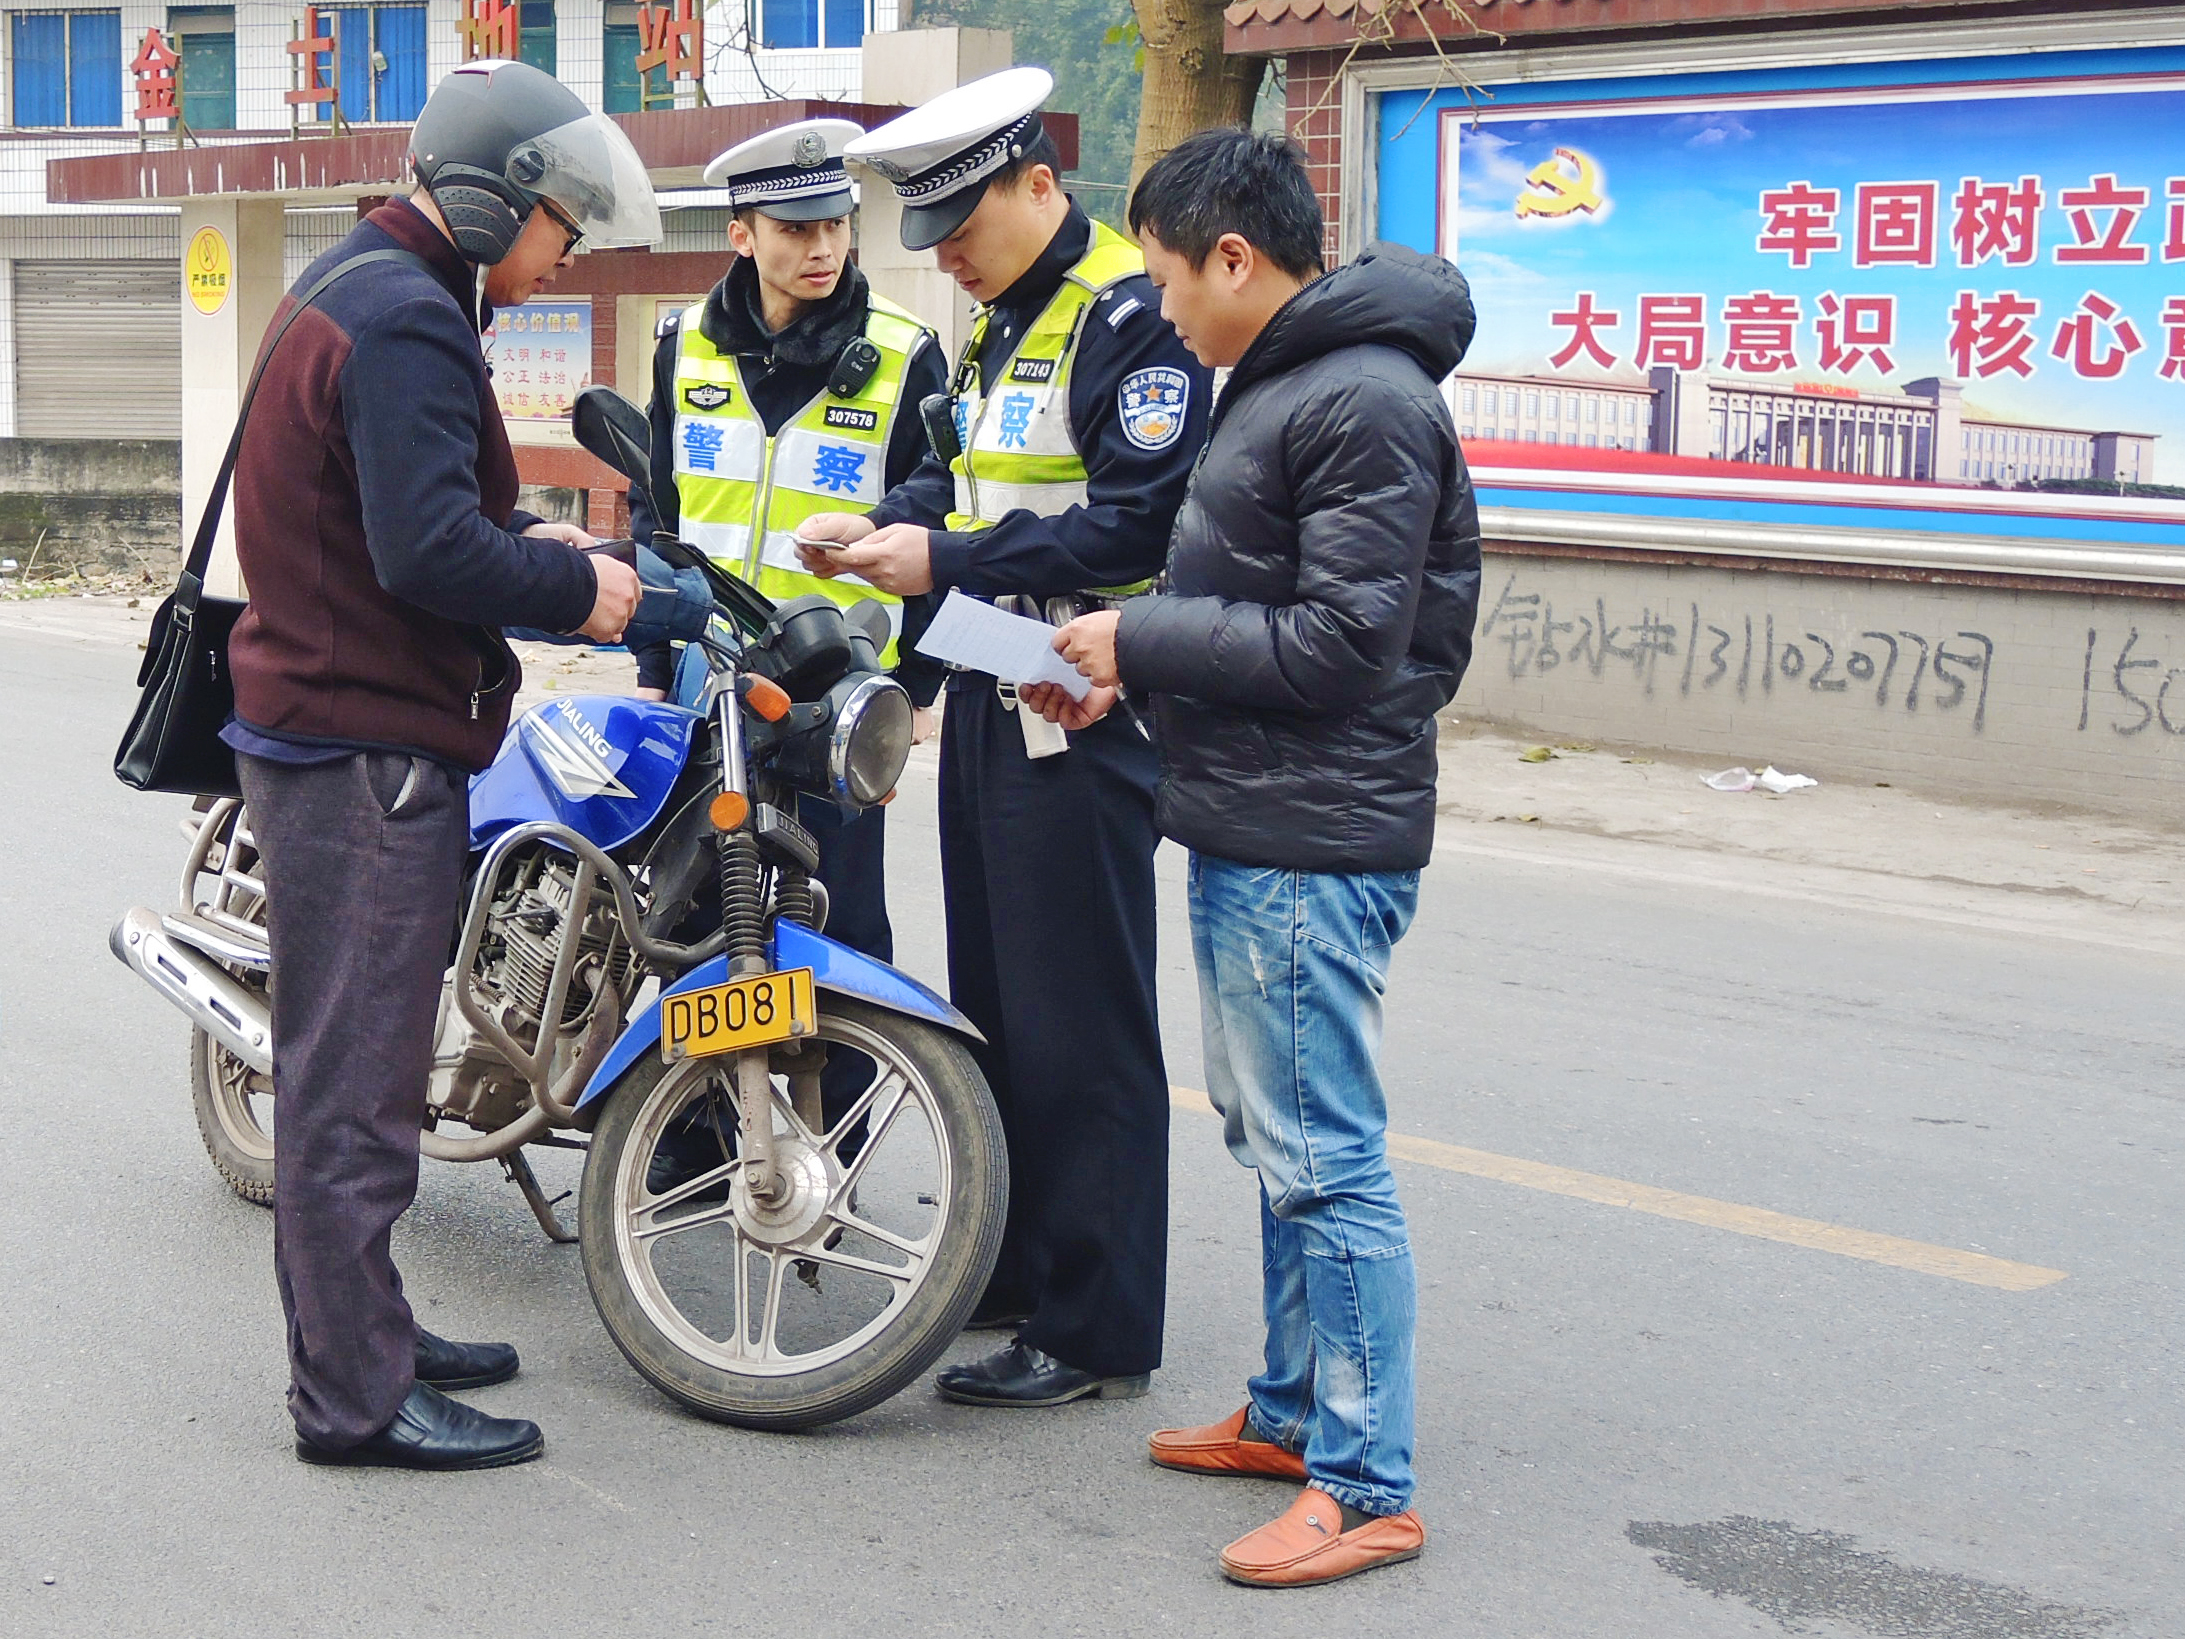 杨雪峰同志生前与同事开展交通执法